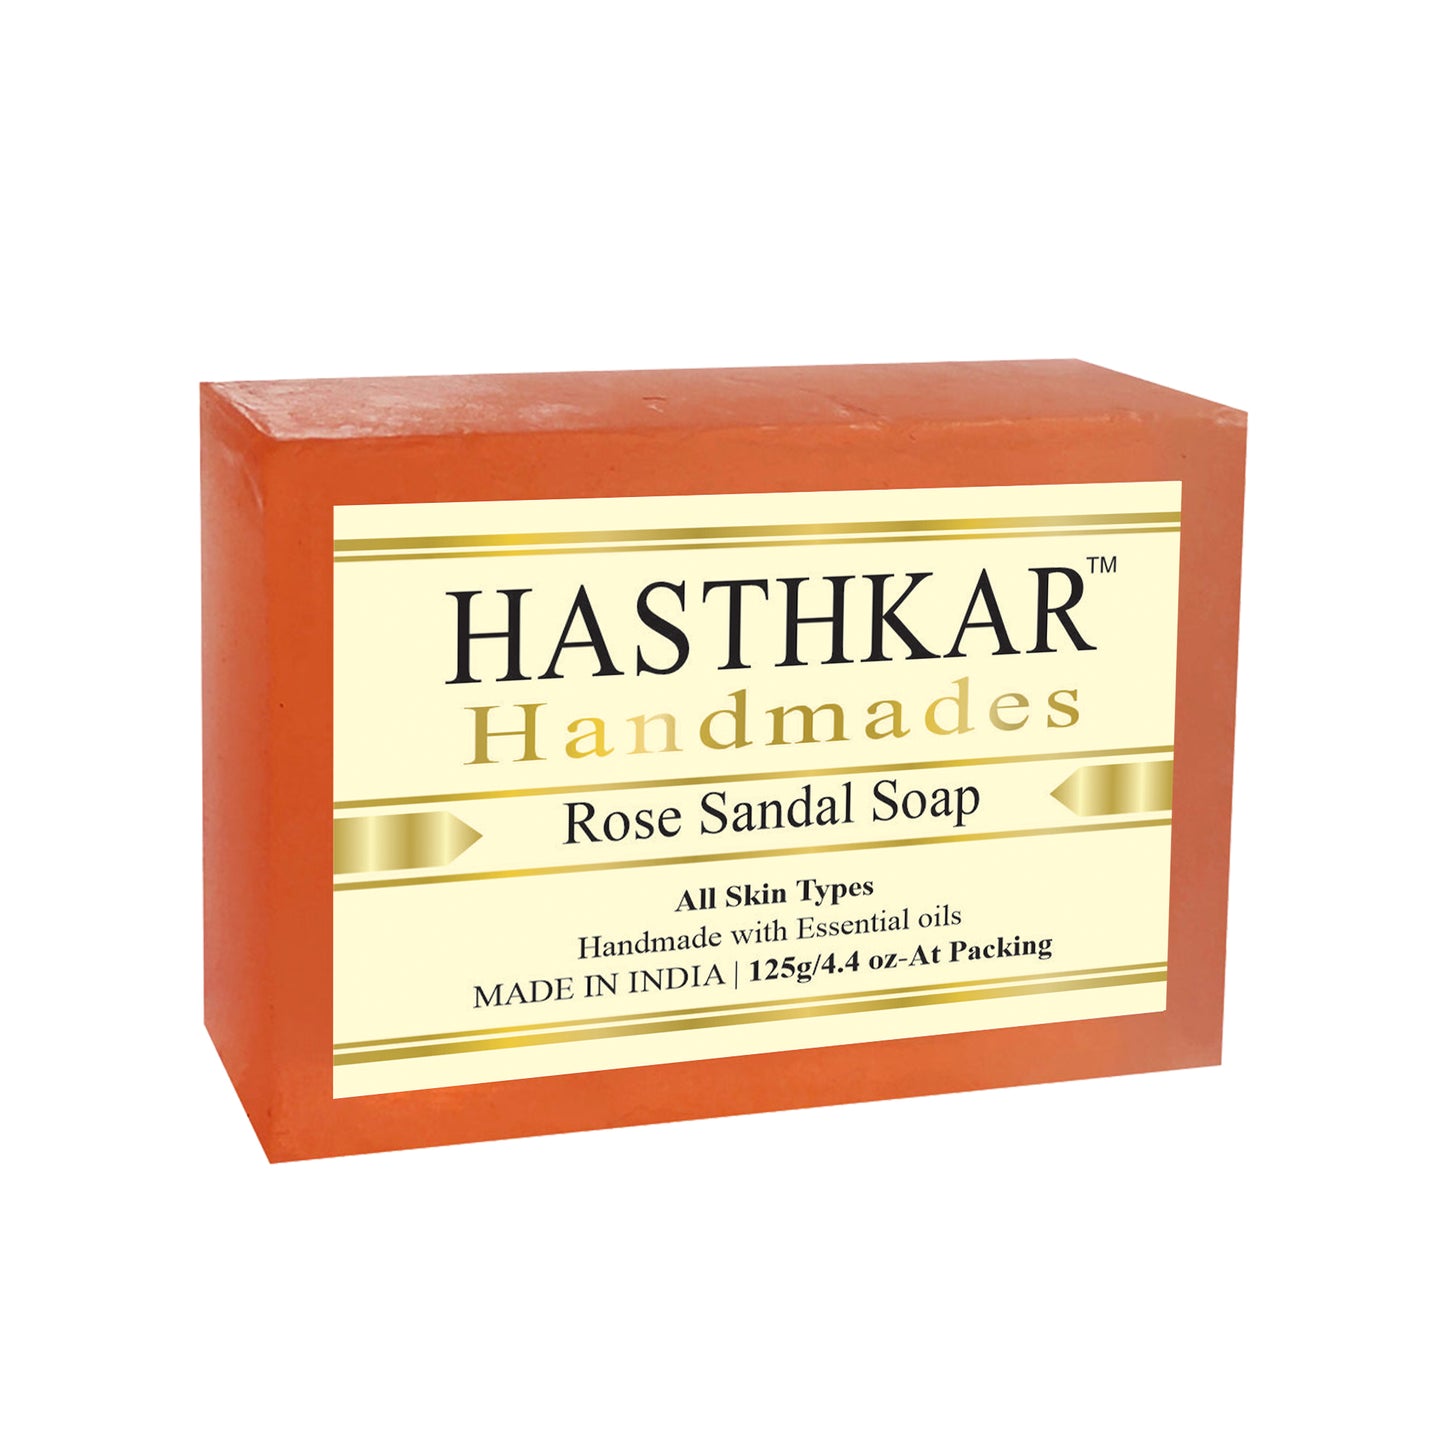 Hasthkar handmades rose sandal bathing soap men and women 